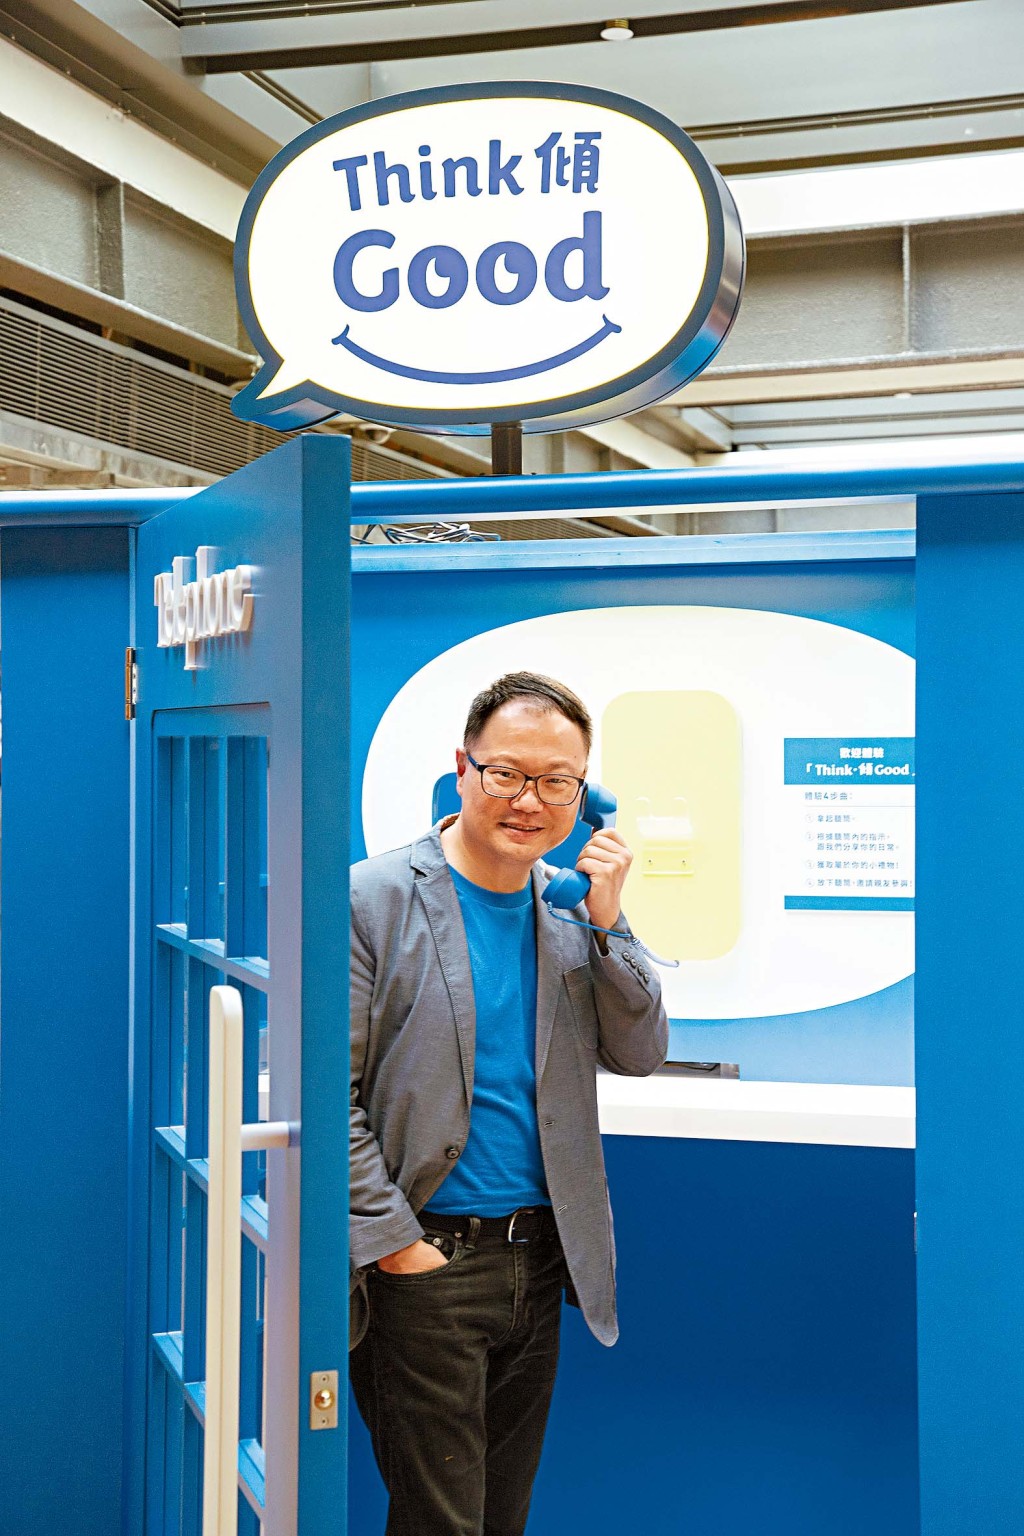 ■「Think．傾 Good」活動設電話亭裝置，讓參加者與義工分享自己的感恩經歷。